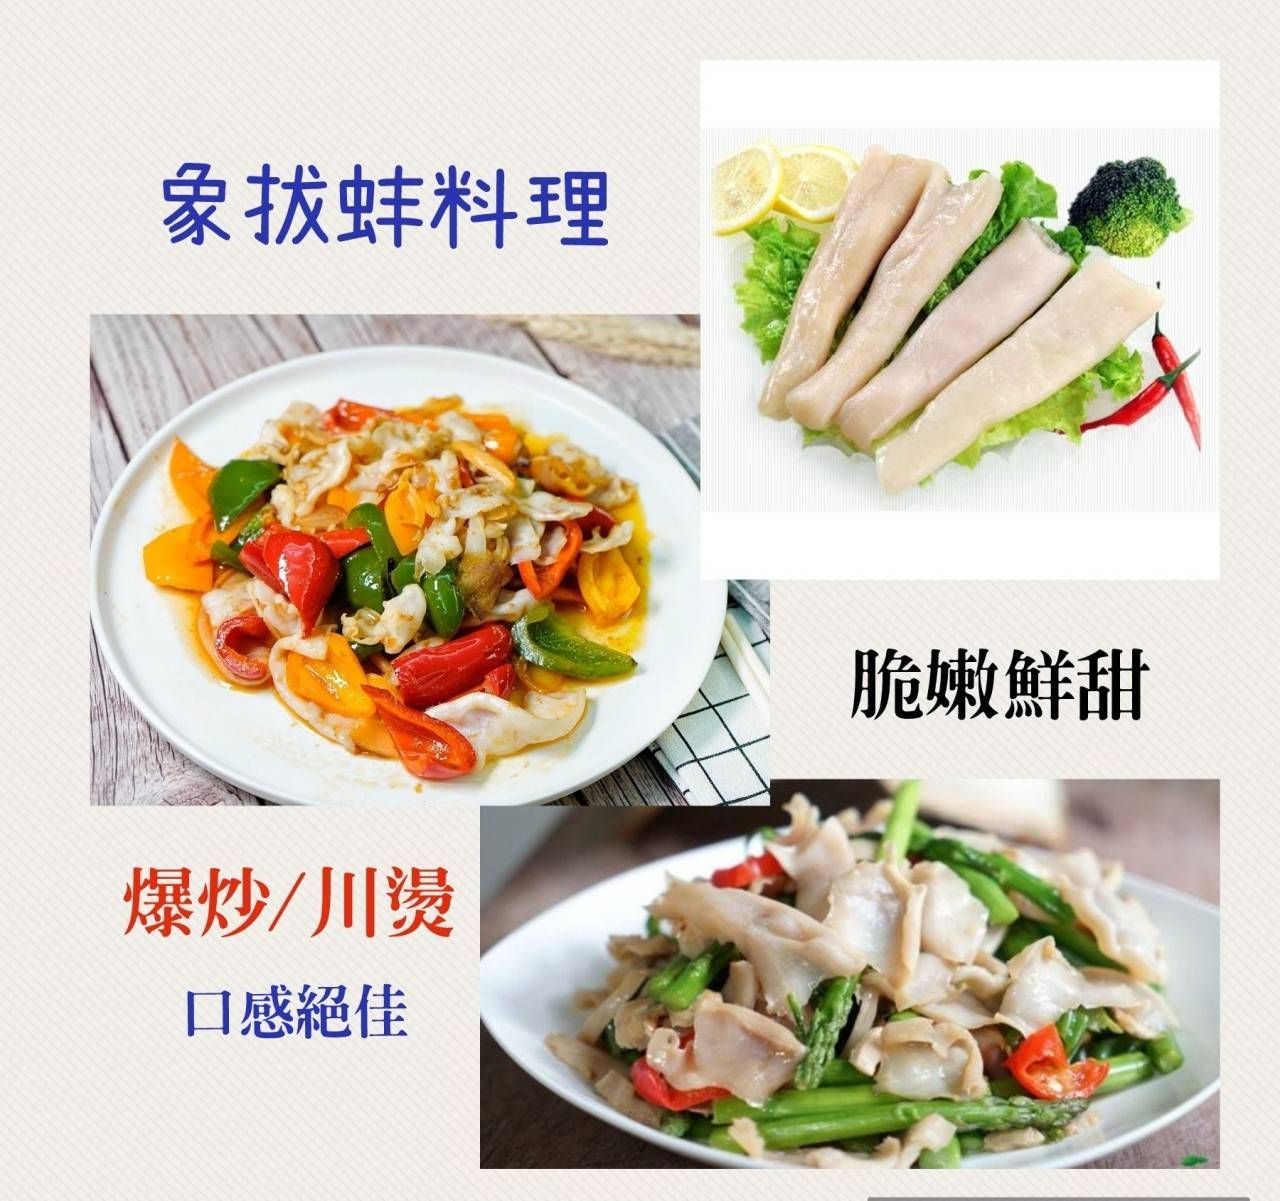 冷凍象拔蚌清肉/1公斤